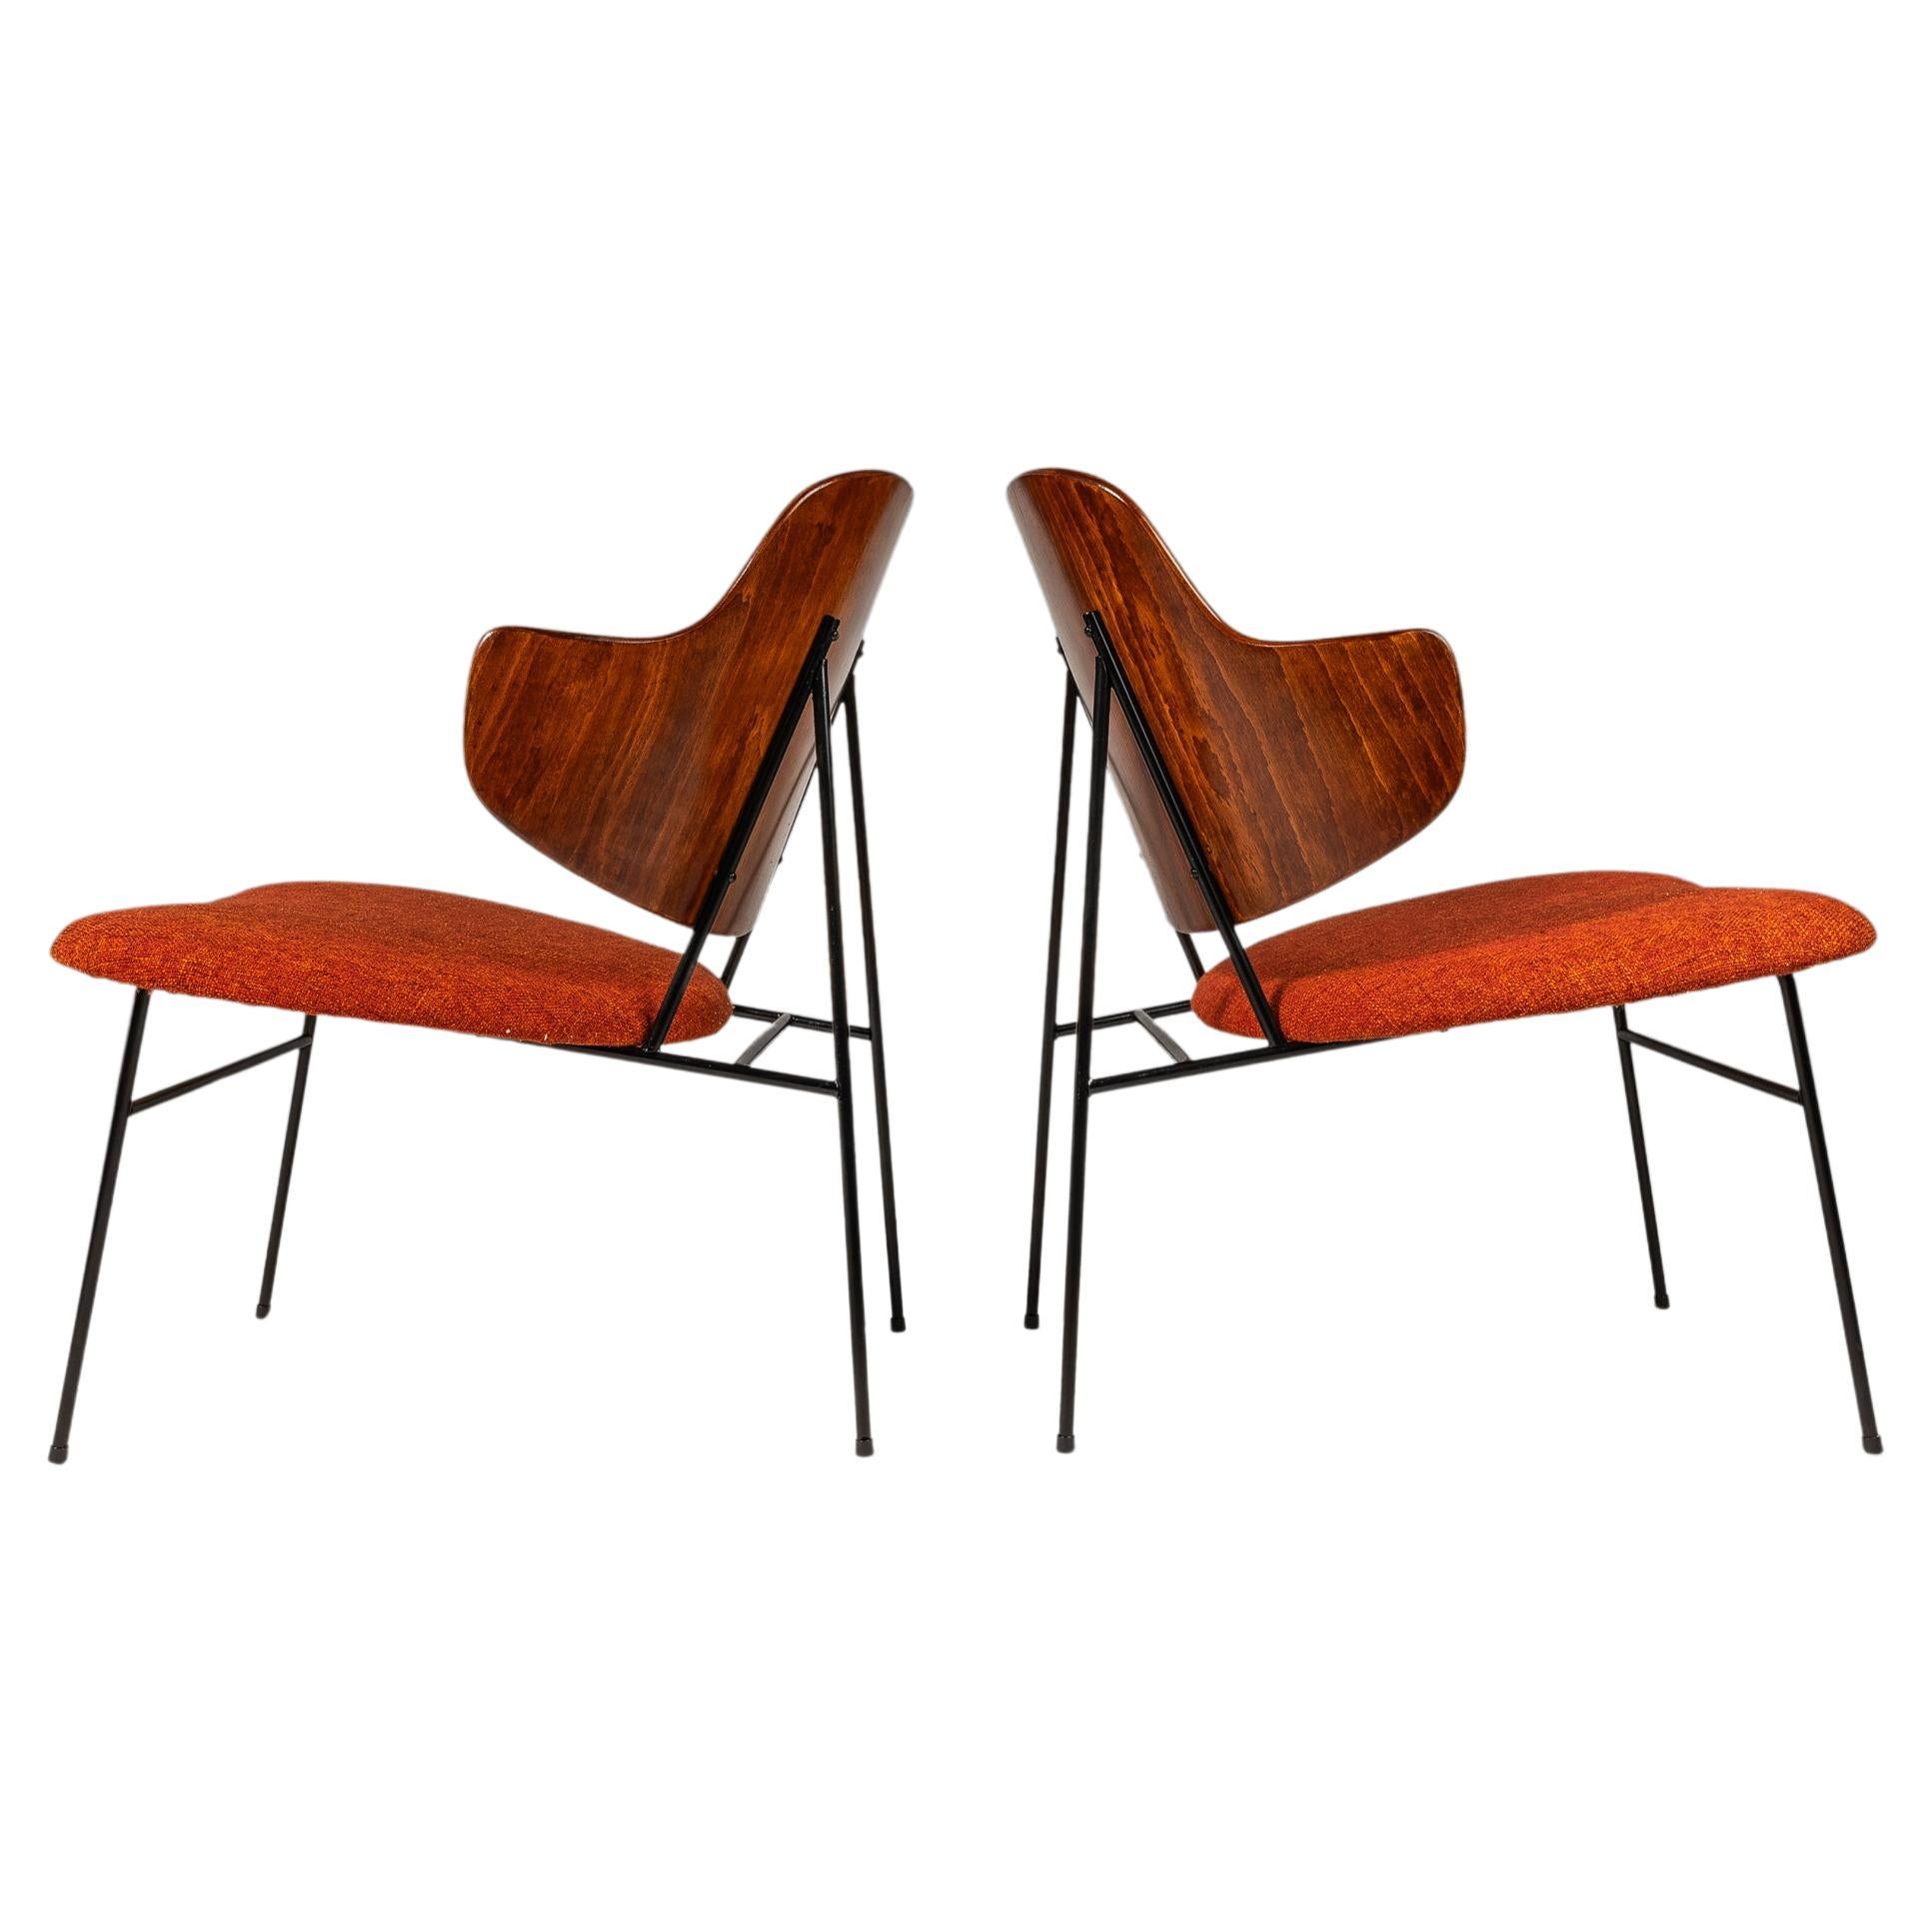 Set of 2 Restored 'Penguin' Chairs by Ib Kofod-Larsen, Selig, Denmark, c. 1960s For Sale